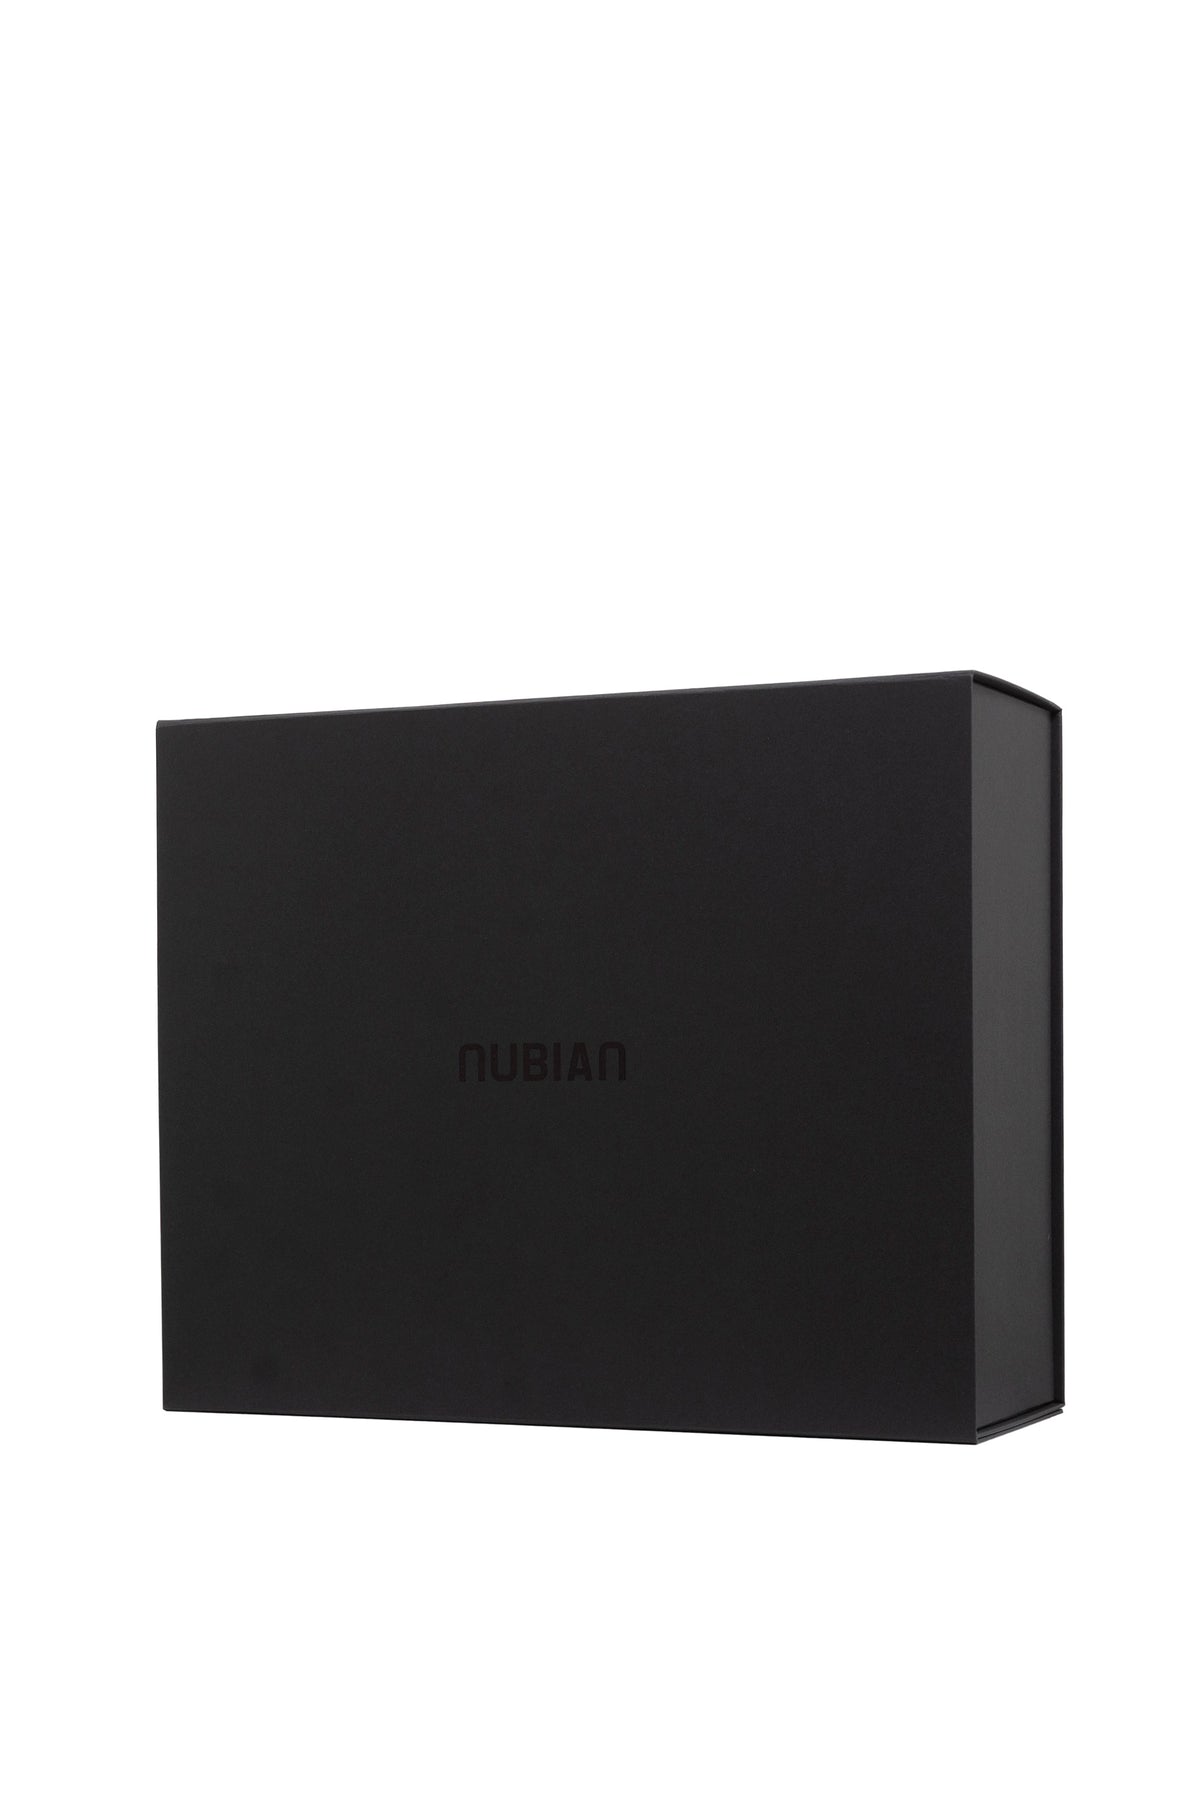 NUBIAN GIFT BOX - L / BLK